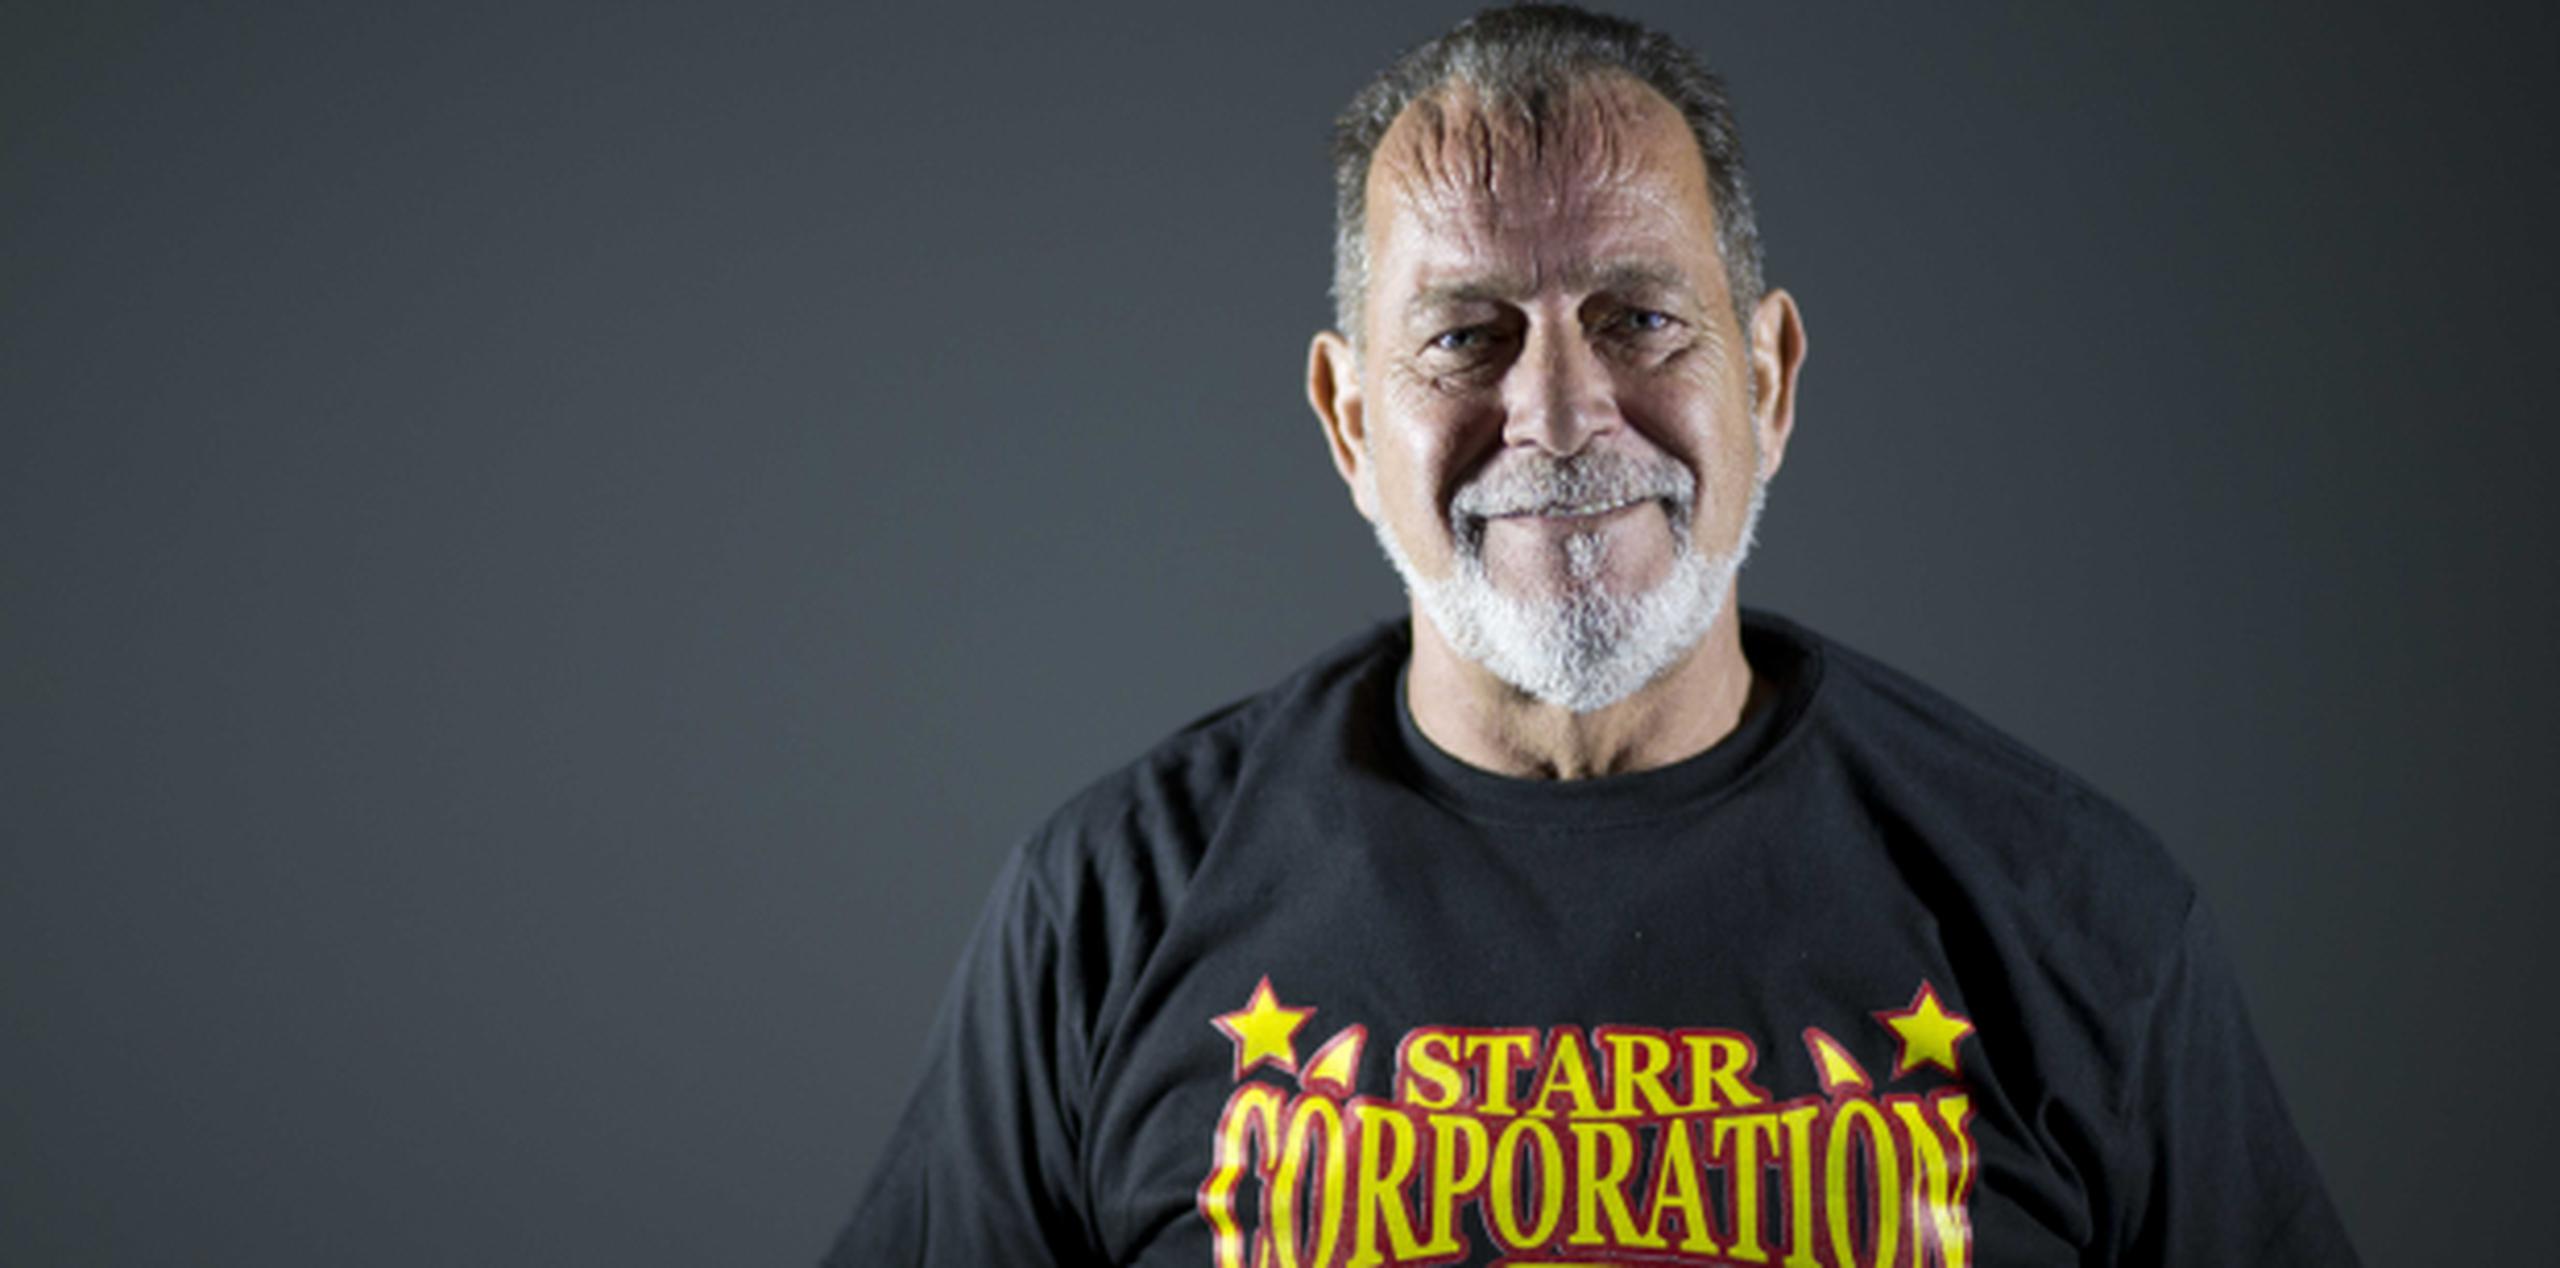 Chicky Starr ha estado 42 años activo en la lucha libre, desde su debut en 1972 (xavier. araujo@gfrmedia.com)